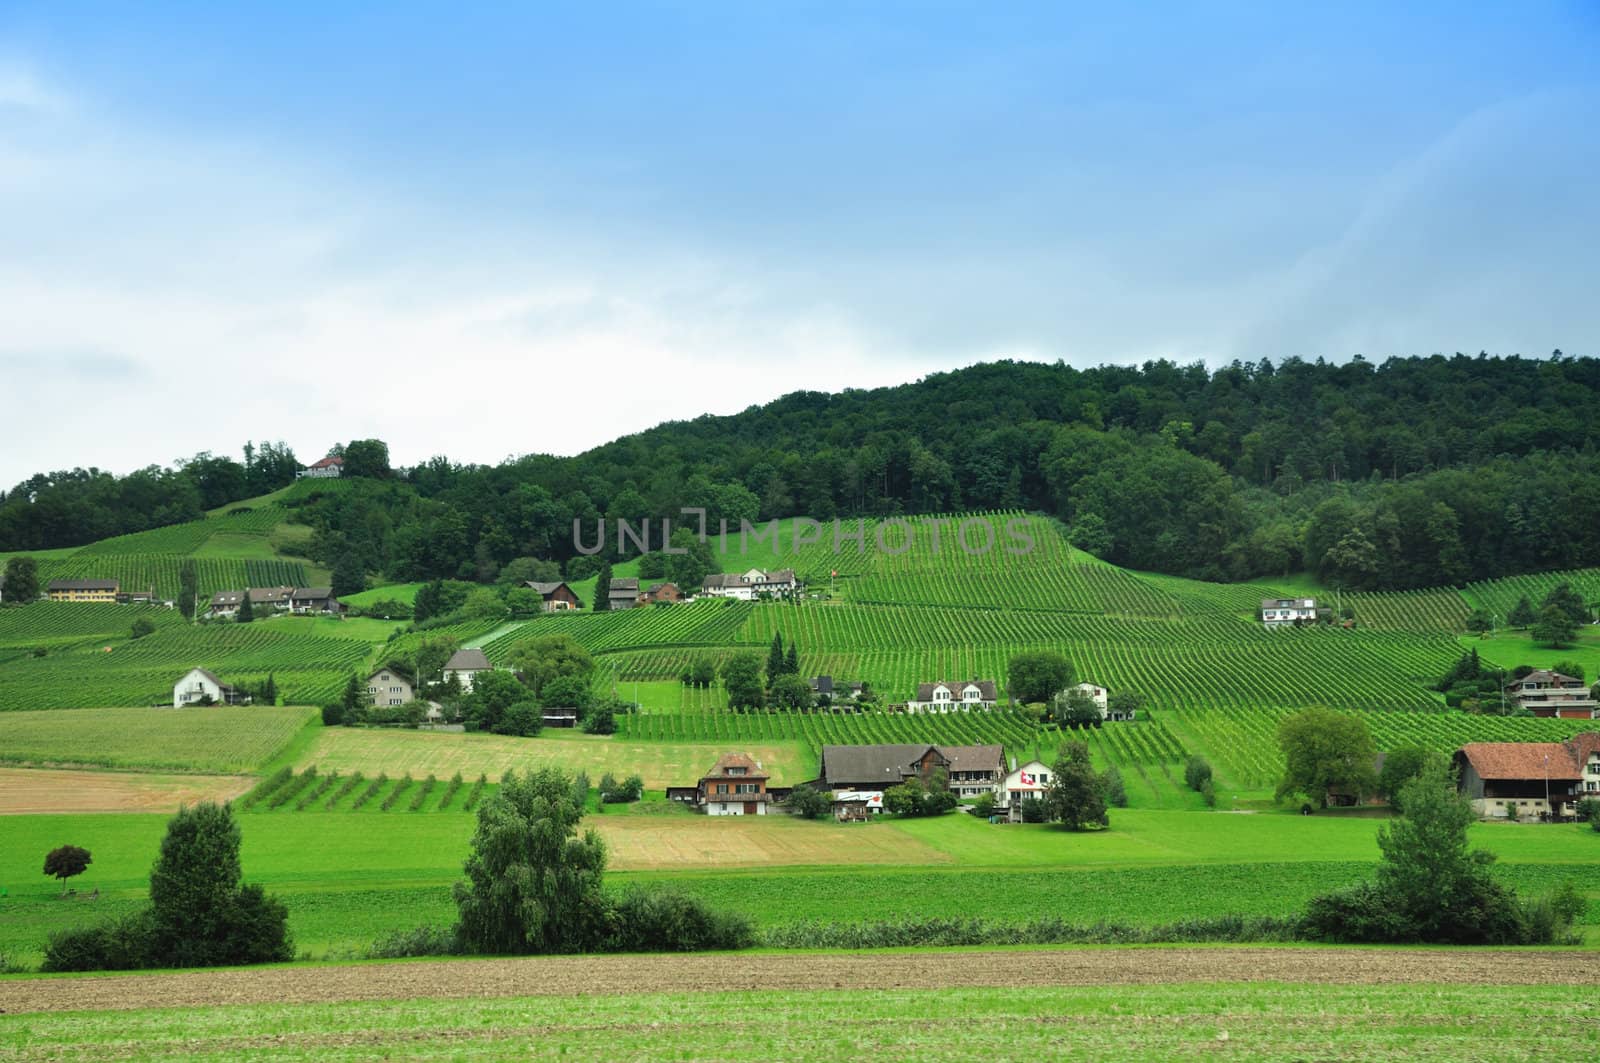 A village in Switzerland and vineyards in summer.
